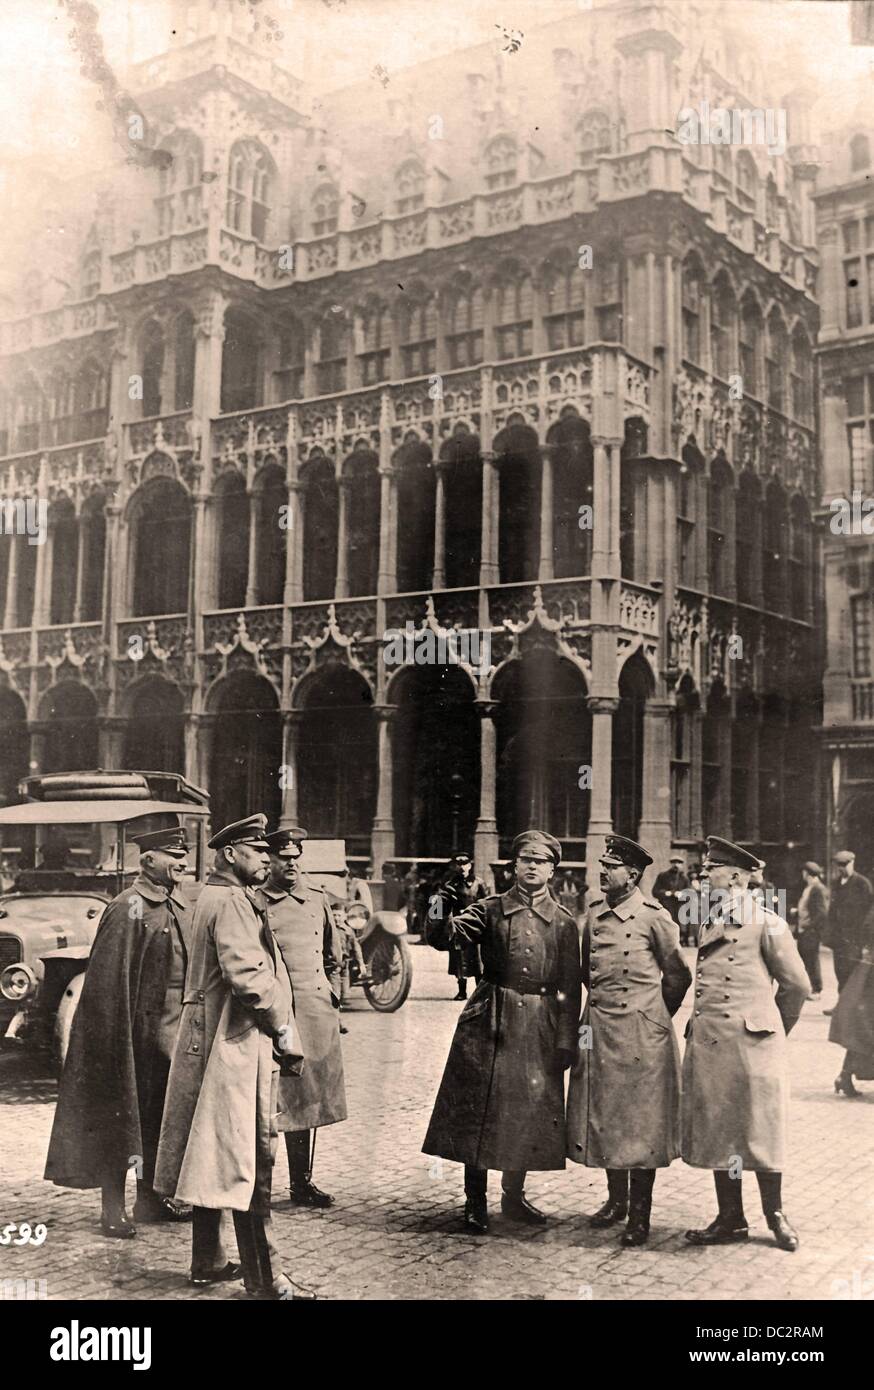 Field Marshal Paul von Hindenburg (2-l) and General Erich Ludendorff (l) are pictured in front of the Broodhuis in Brussels, Belgium. Date unknown. Fotoarchiv für Zeitgeschichte Stock Photo